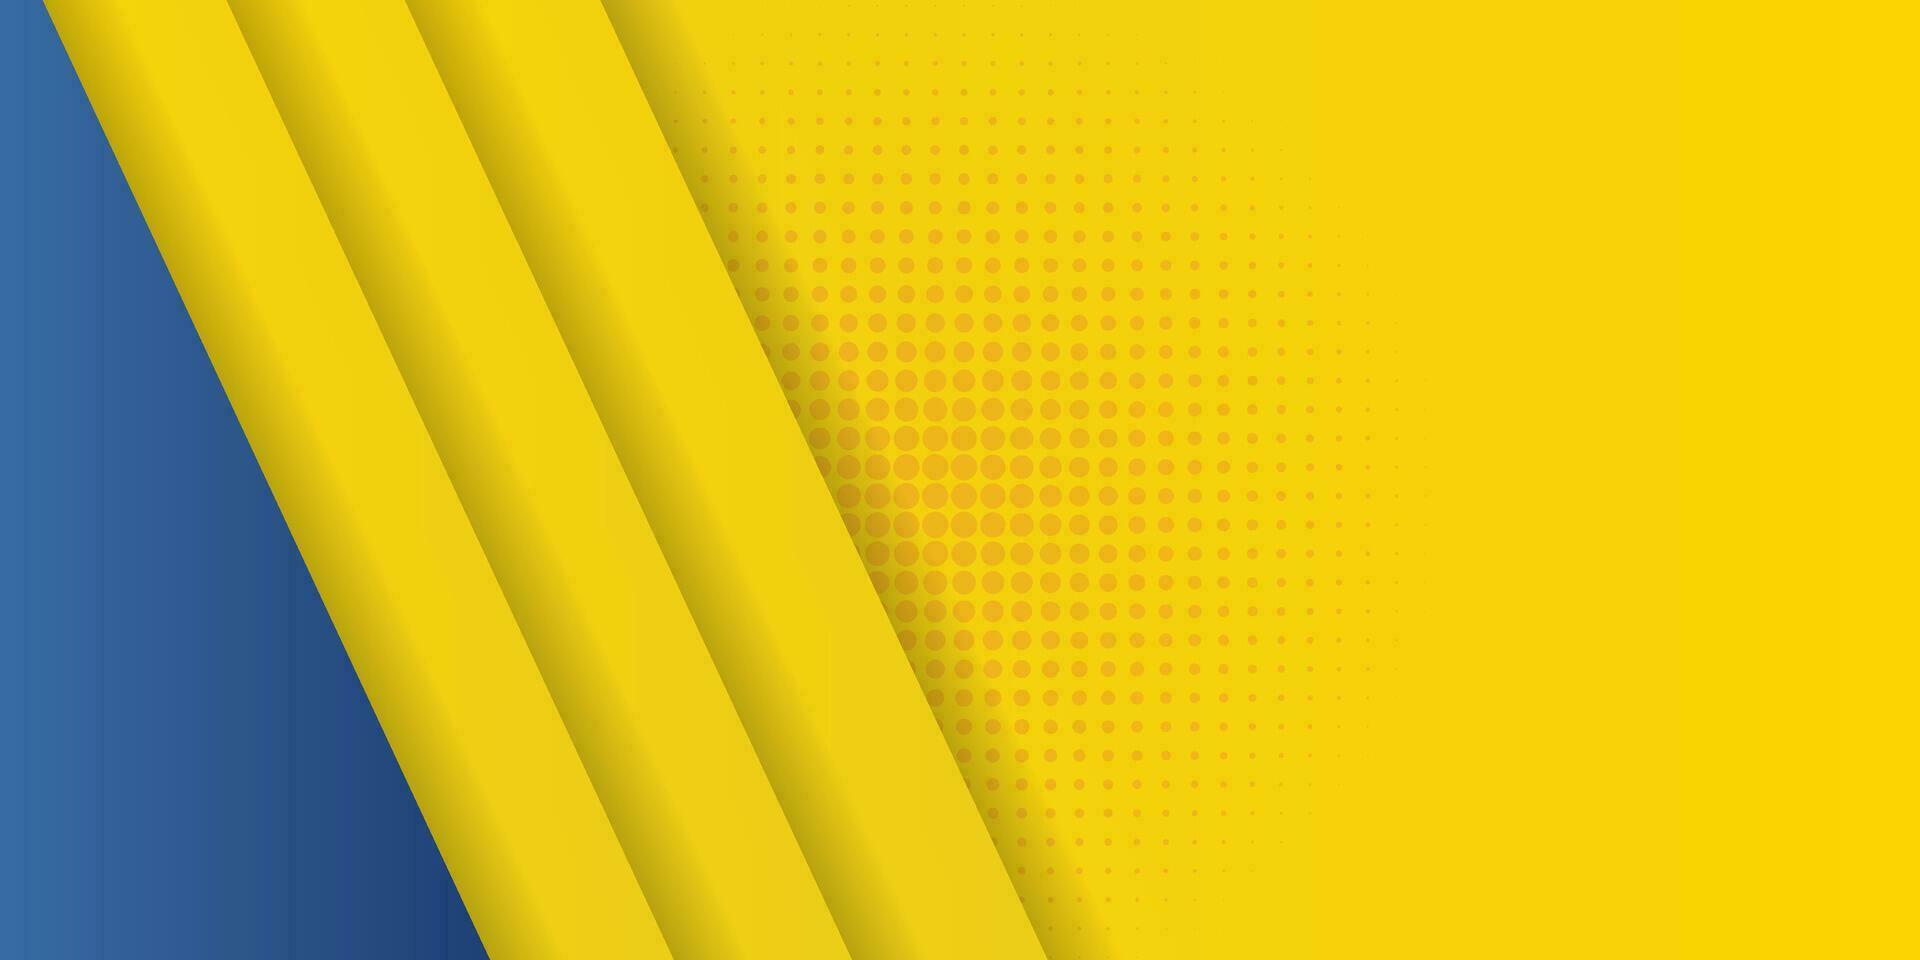 abstrakt bakgrund modern hipster trogen grafisk. gul bakgrund med Ränder. vektor abstrakt bakgrund textur design, ljus affisch, baner gul och blå bakgrund vektor illustration.